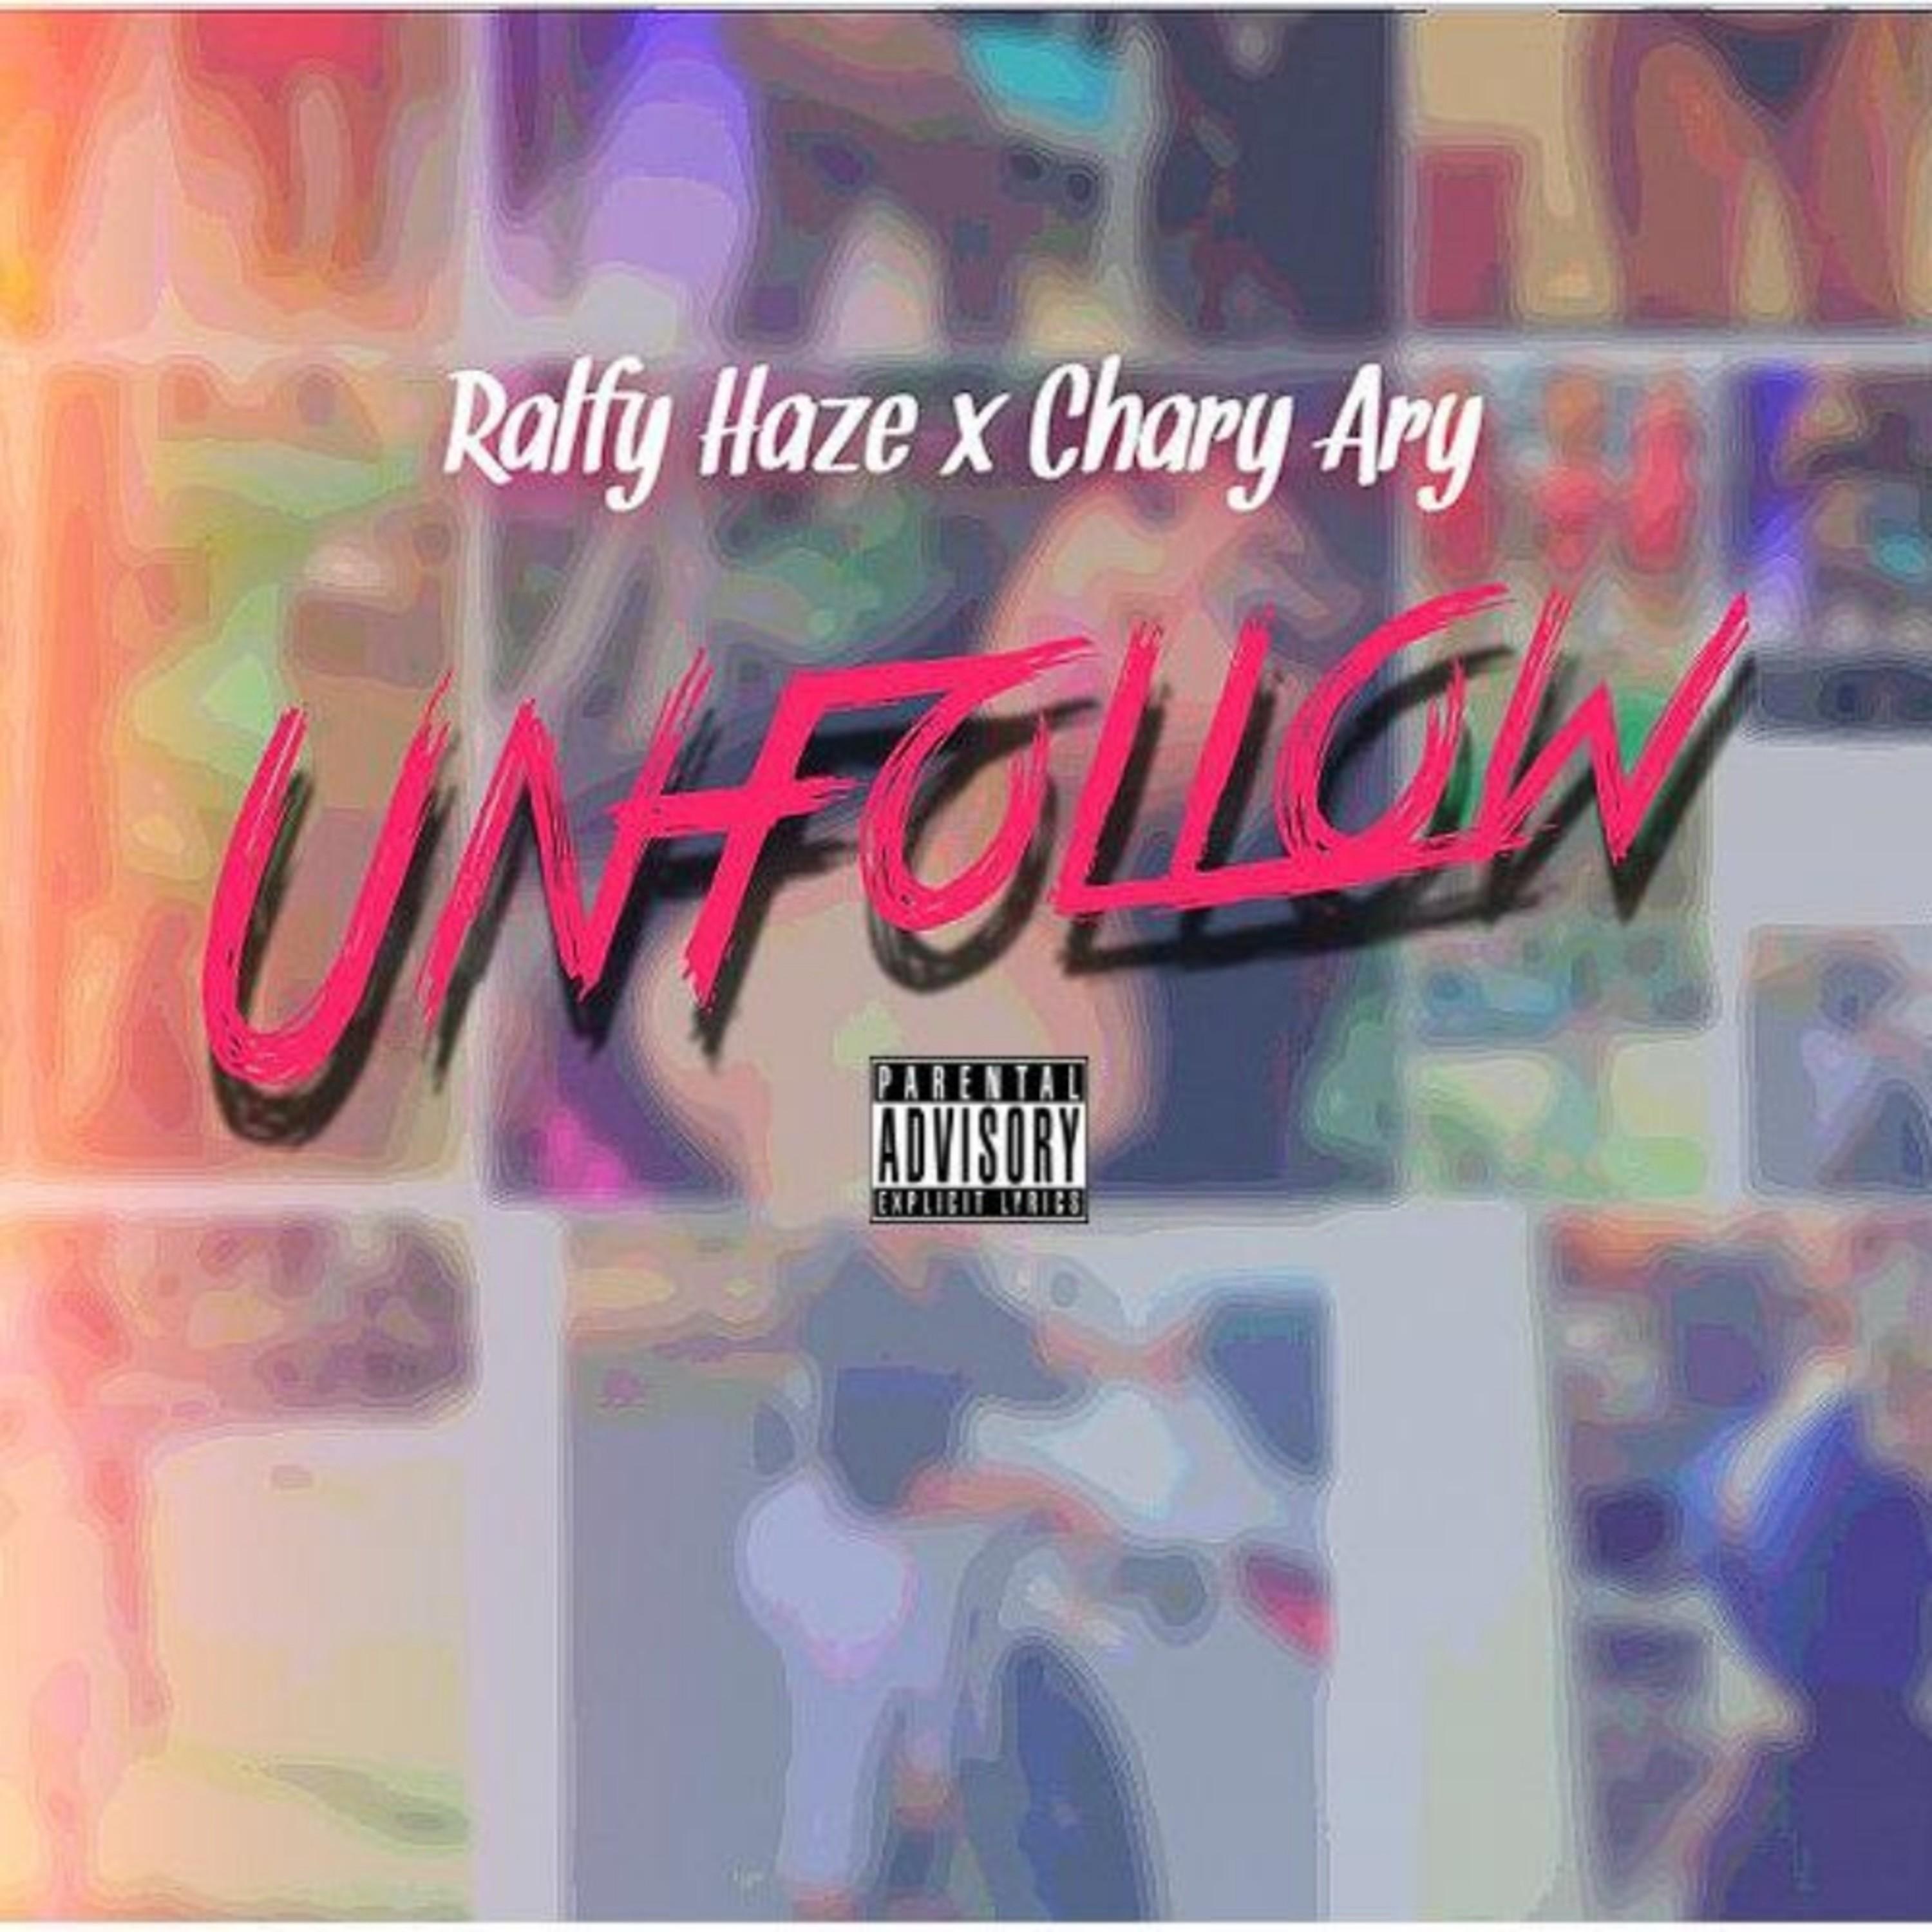 Chary Ary - Unfollow (feat. Ralfy Haze)